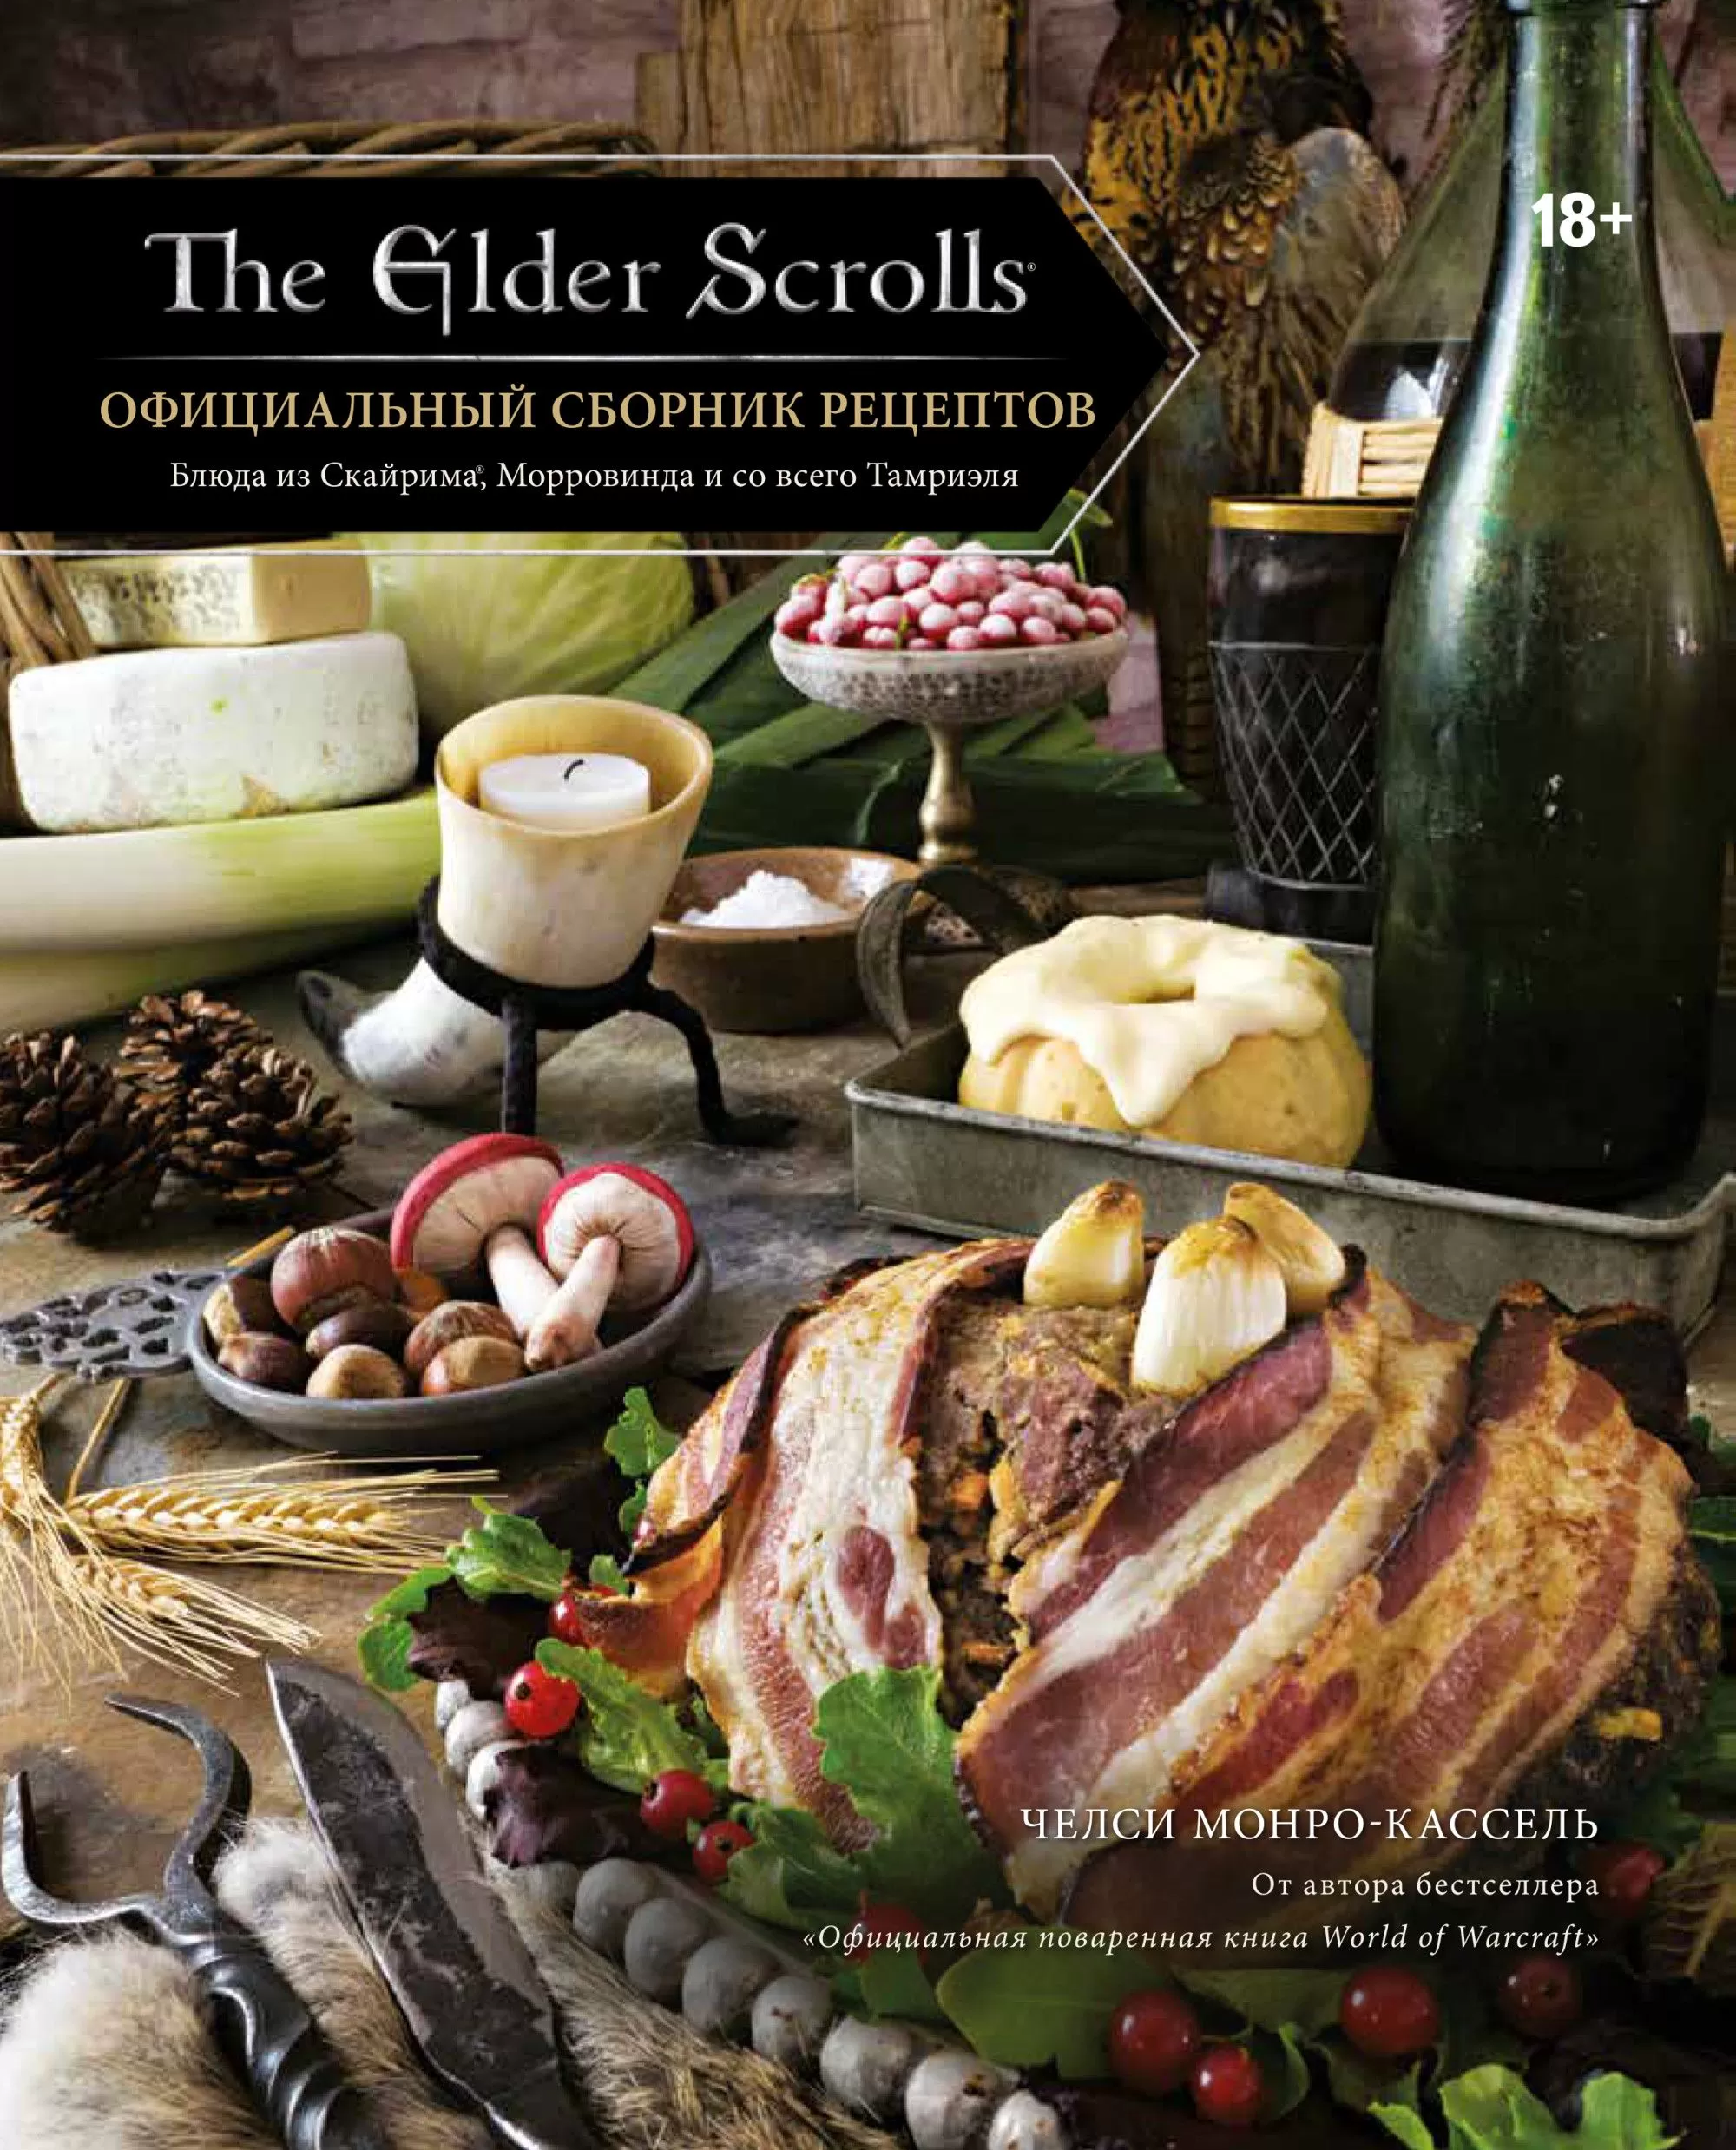 Официальный сборник рецептов. The Elder Scrolls. - купить в магазине Кассандра, фото, 9785041086787, 